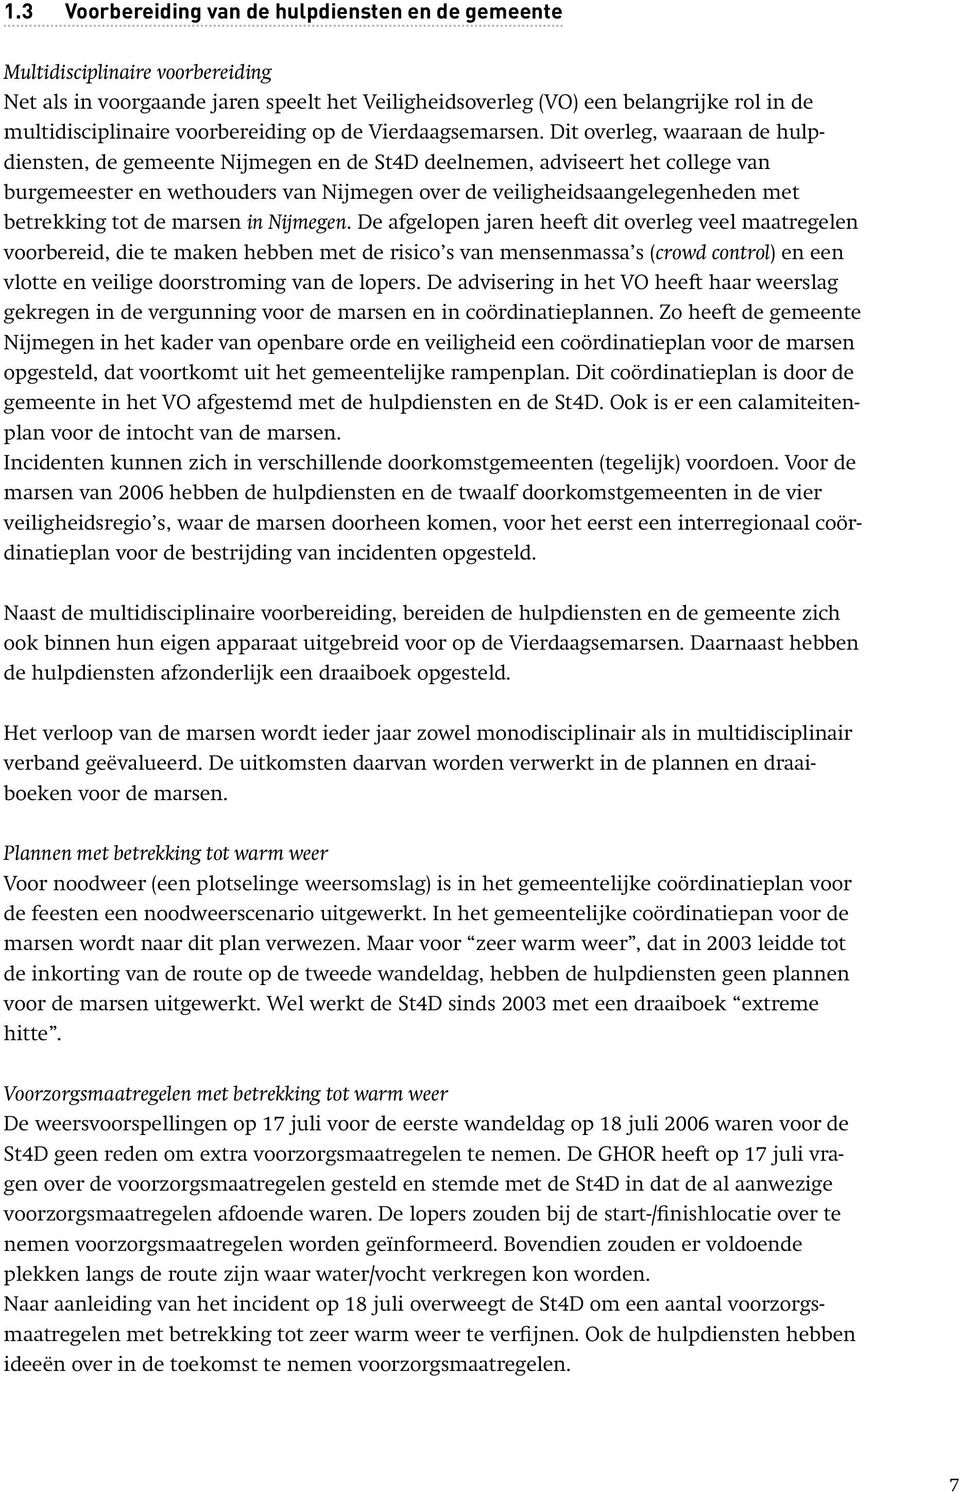 Dit overleg, waaraan de hulpdiensten, de gemeente Nijmegen en de St4D deelnemen, adviseert het college van burgemeester en wethouders van Nijmegen over de veiligheidsaangelegenheden met betrekking